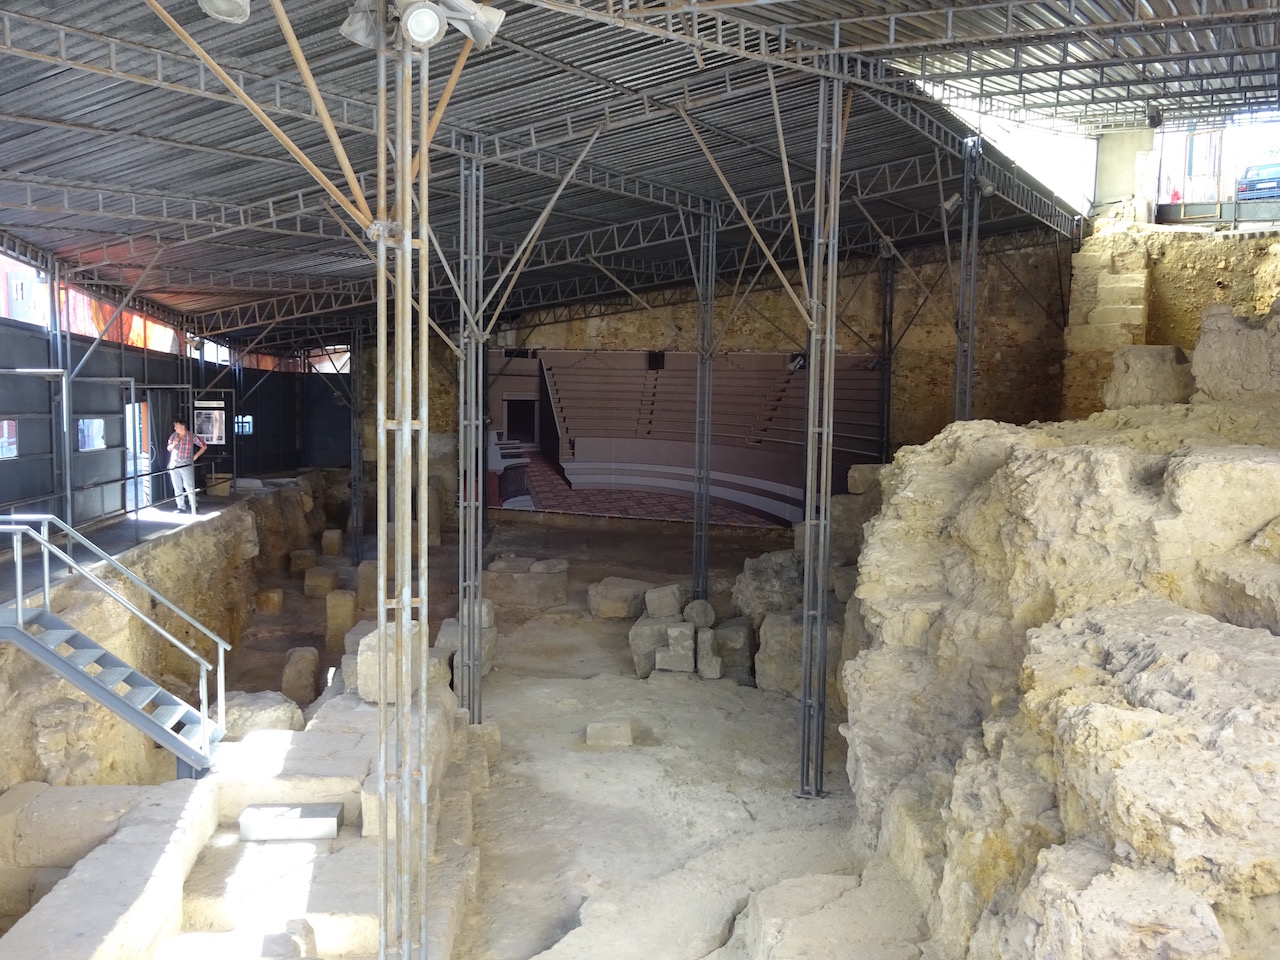 Teatro Romano, ein altes römisches Theater welches bei Ausgrabungen in der Stadt entdeckt wurde